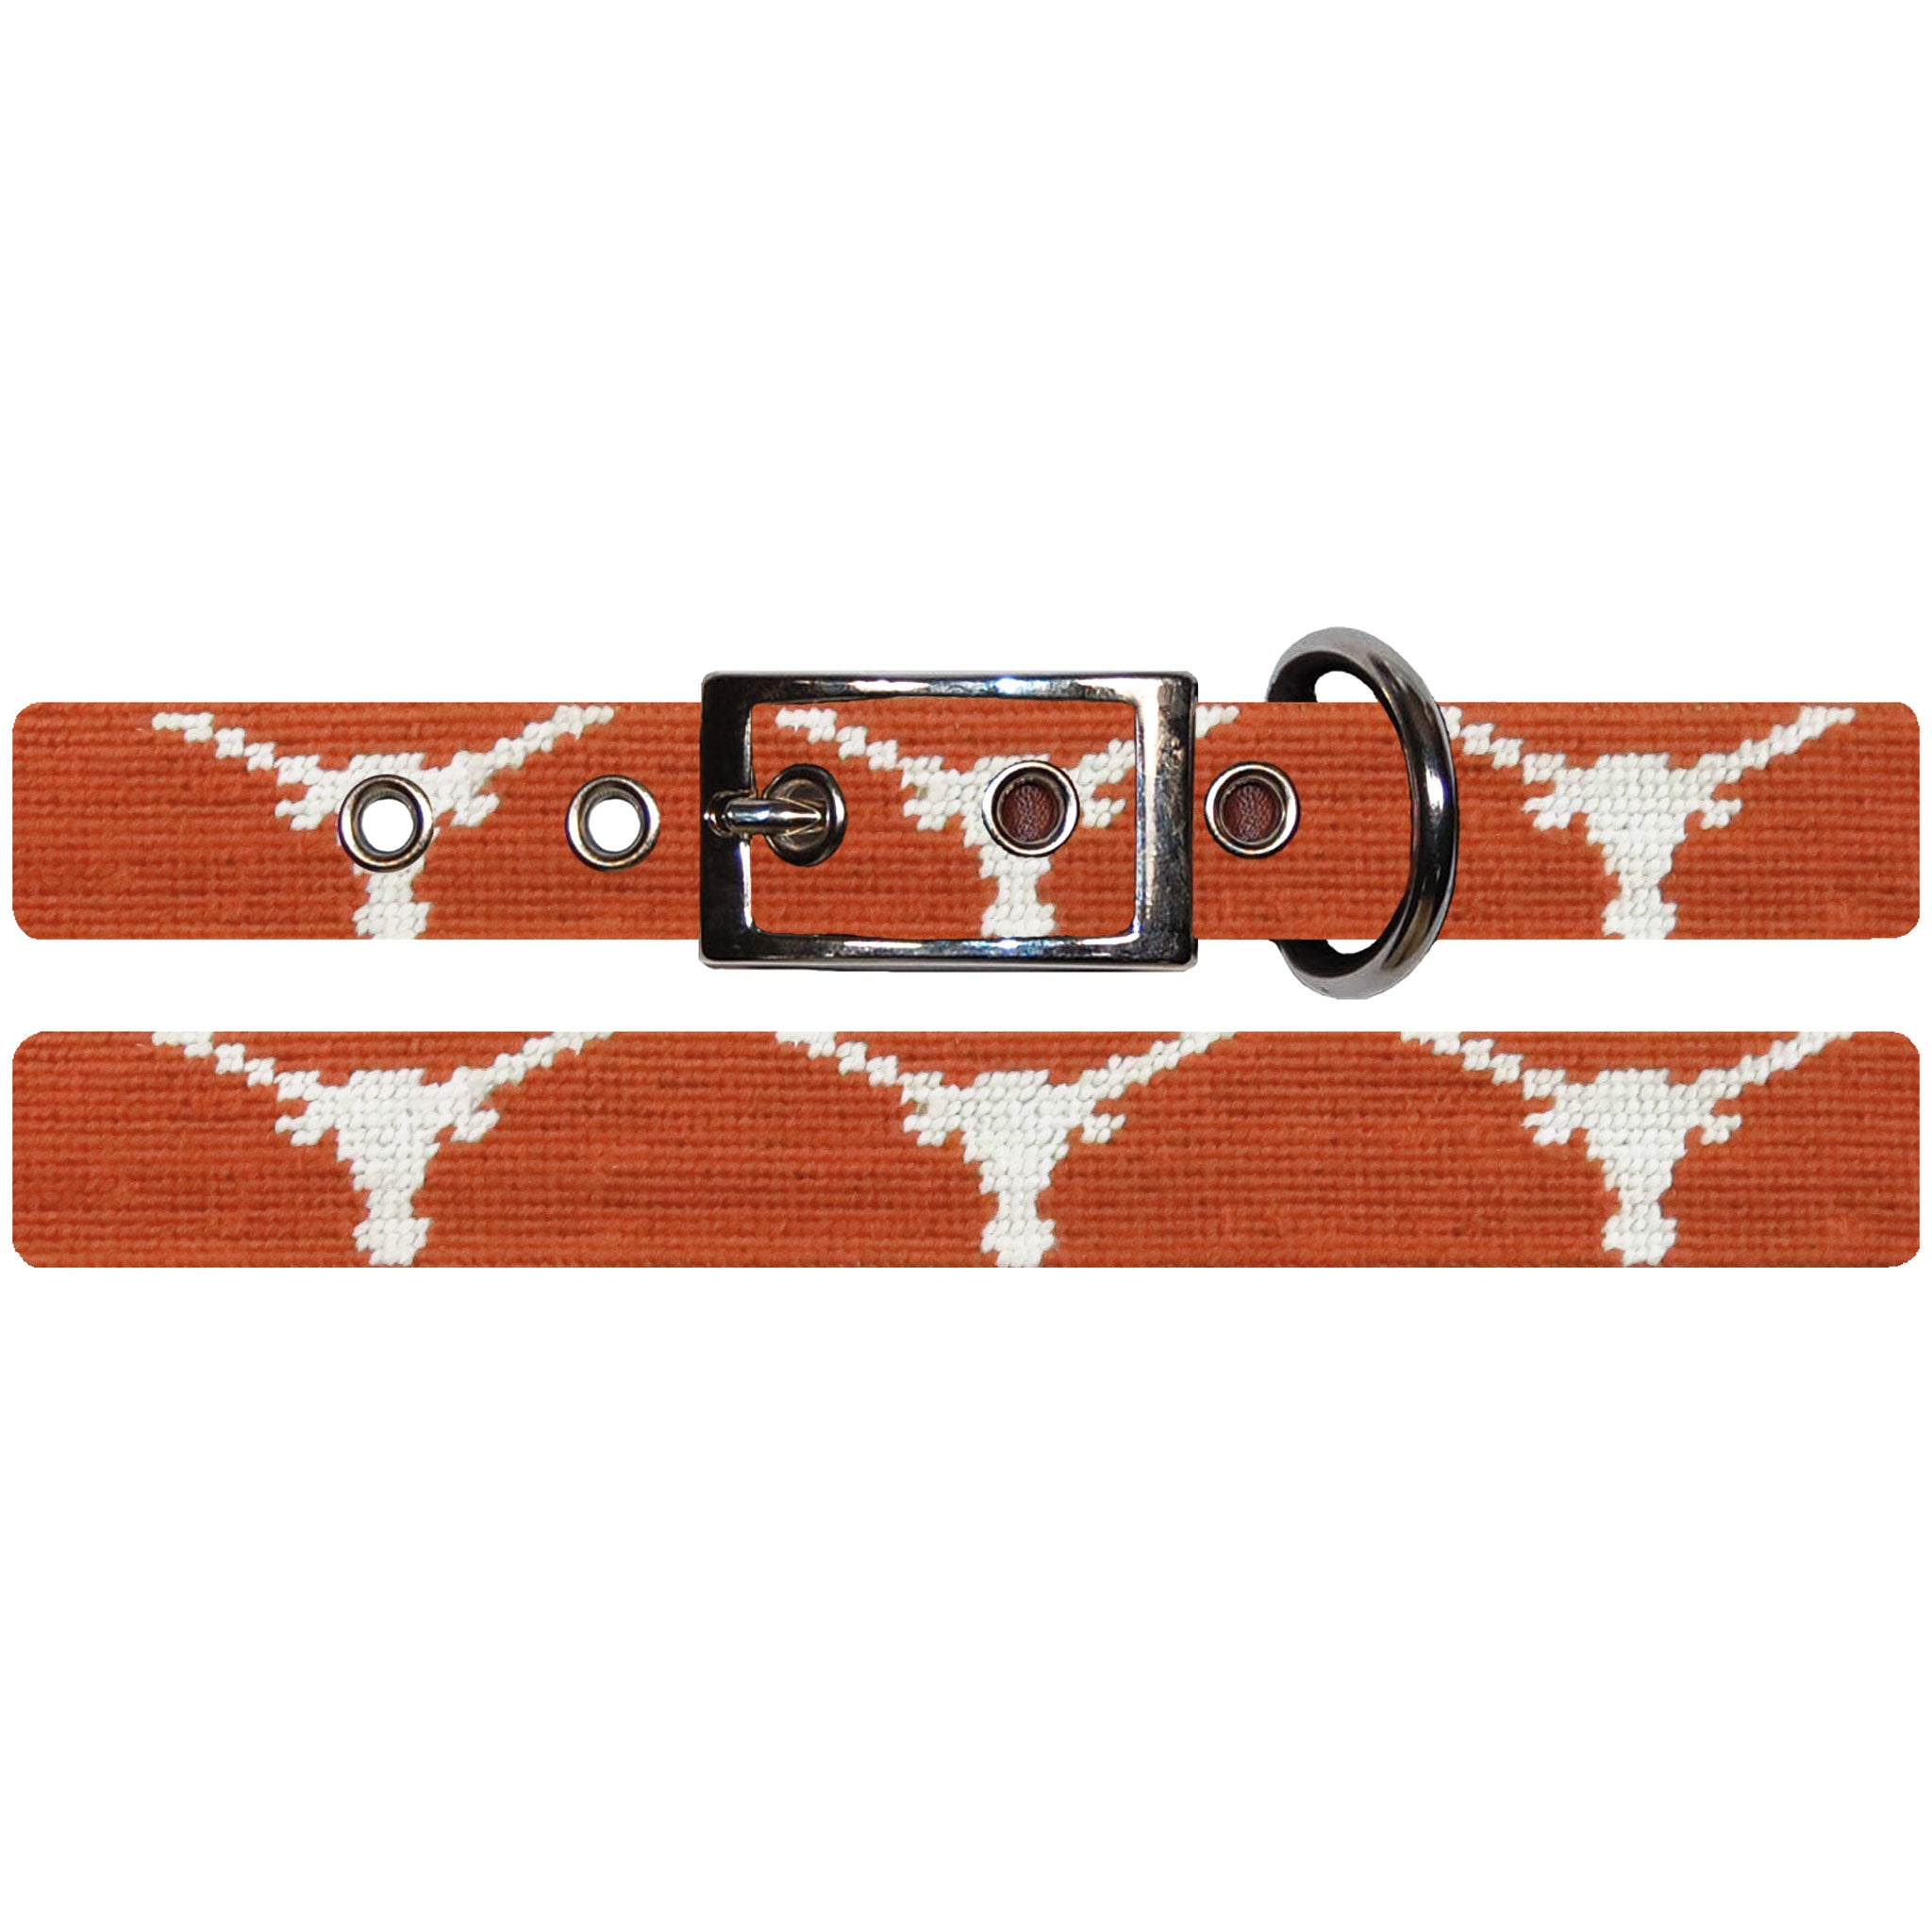 University of Texas Dog Collar (Burnt Orange)